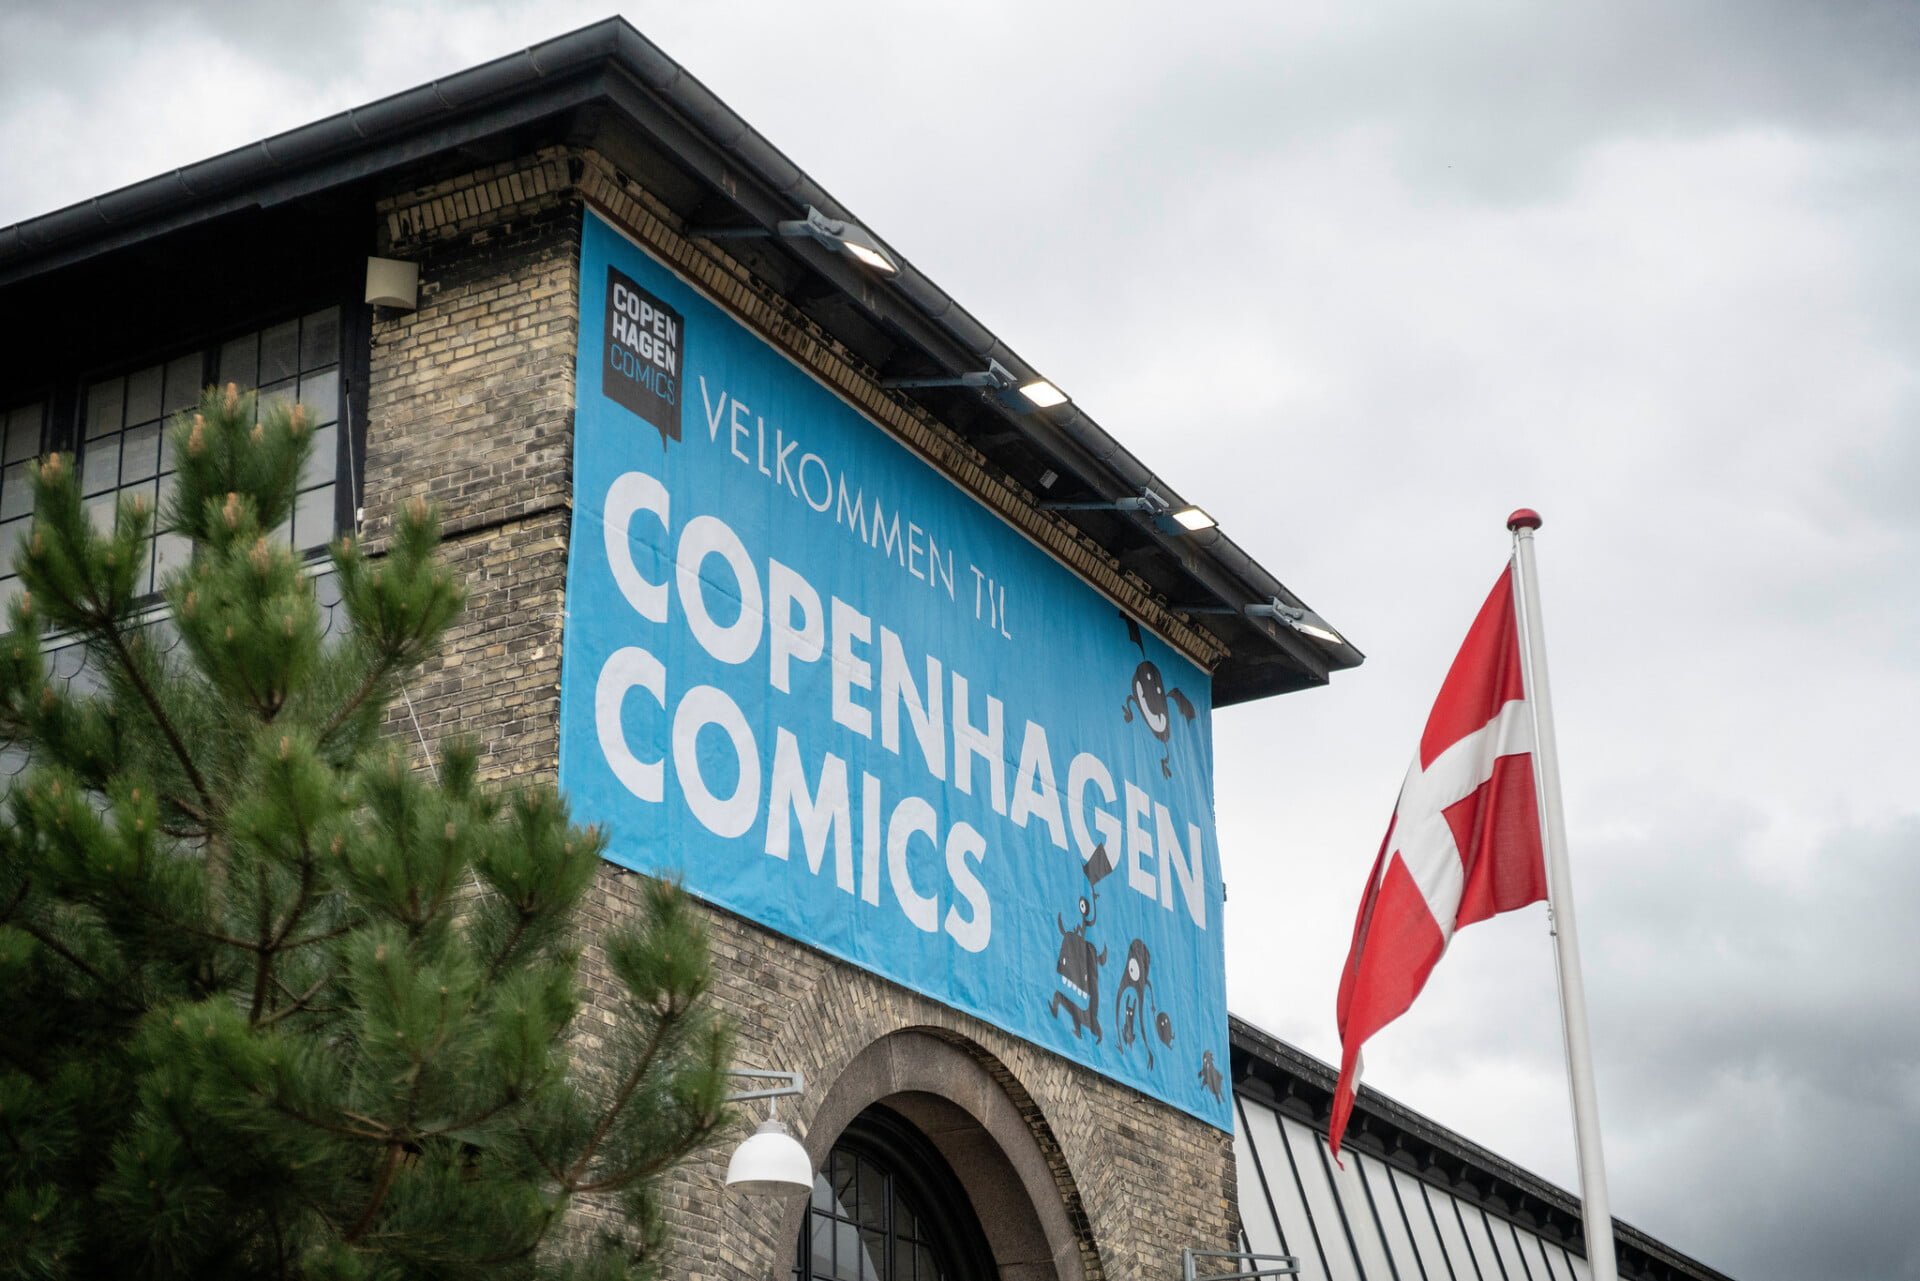 Indgang til Copenhagen Comics - Foto: Carsten Olsen